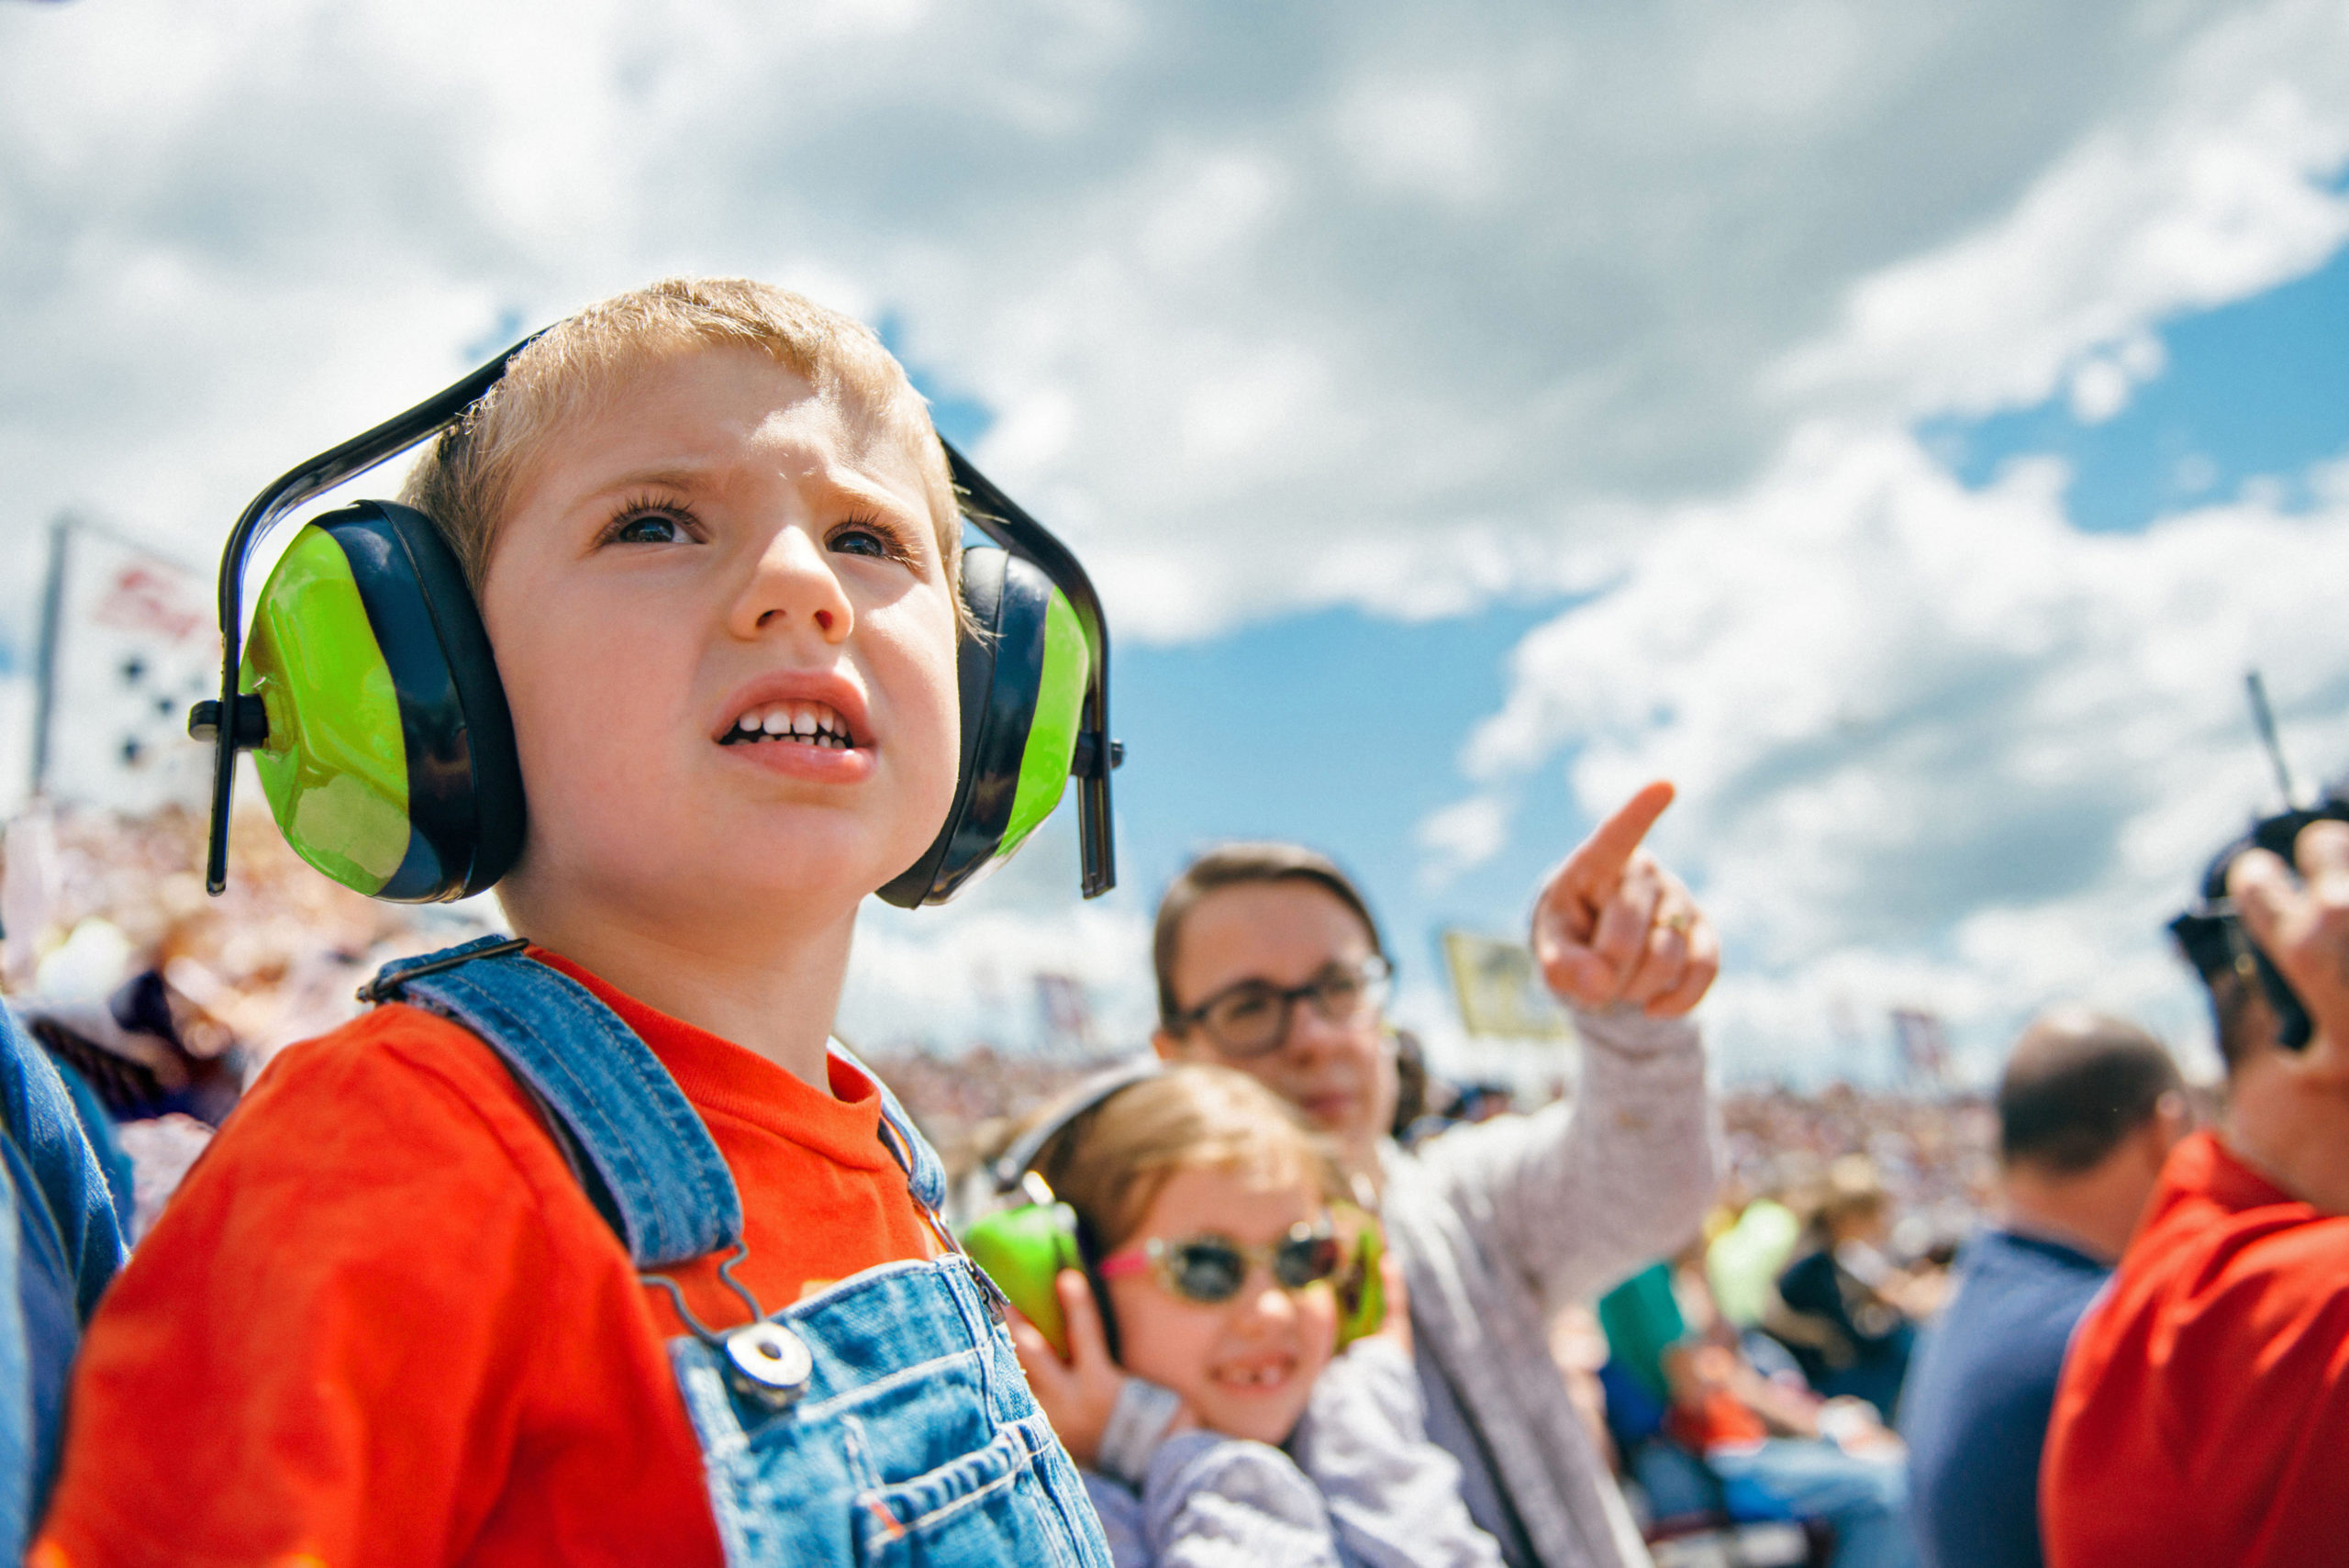 Bei lautstarken Veranstaltungen wie einem Besuch im Fußballstadion sollten Eltern an Gehörschutz für ihre Kinder denken.